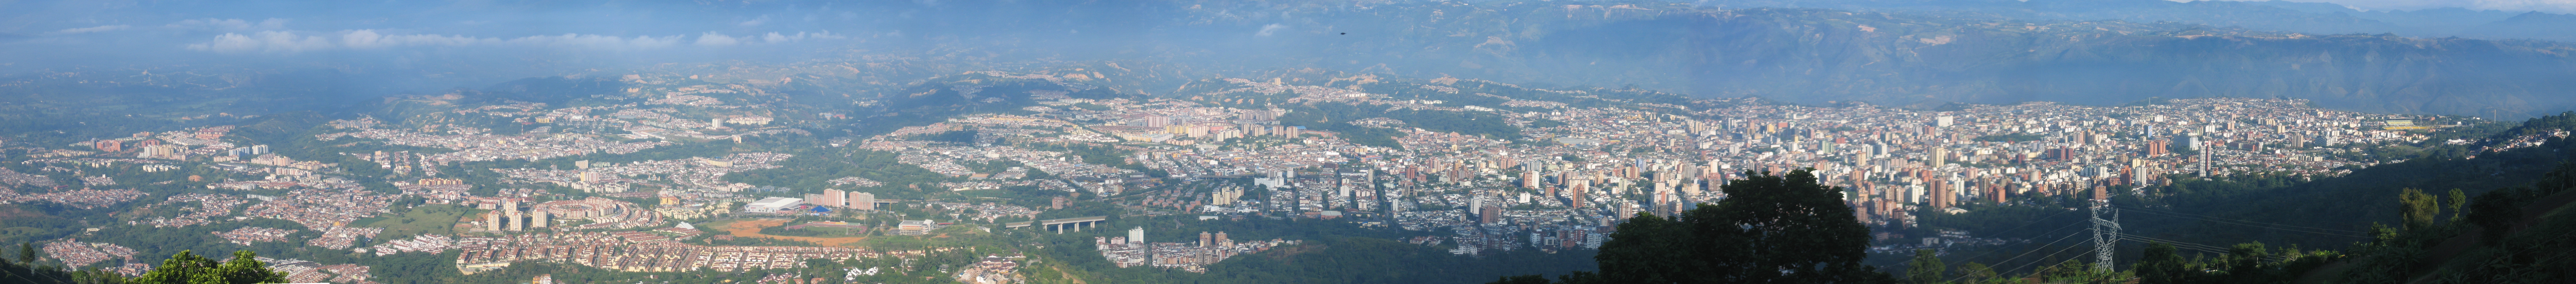 Panoramica Bucaramanga.jpg